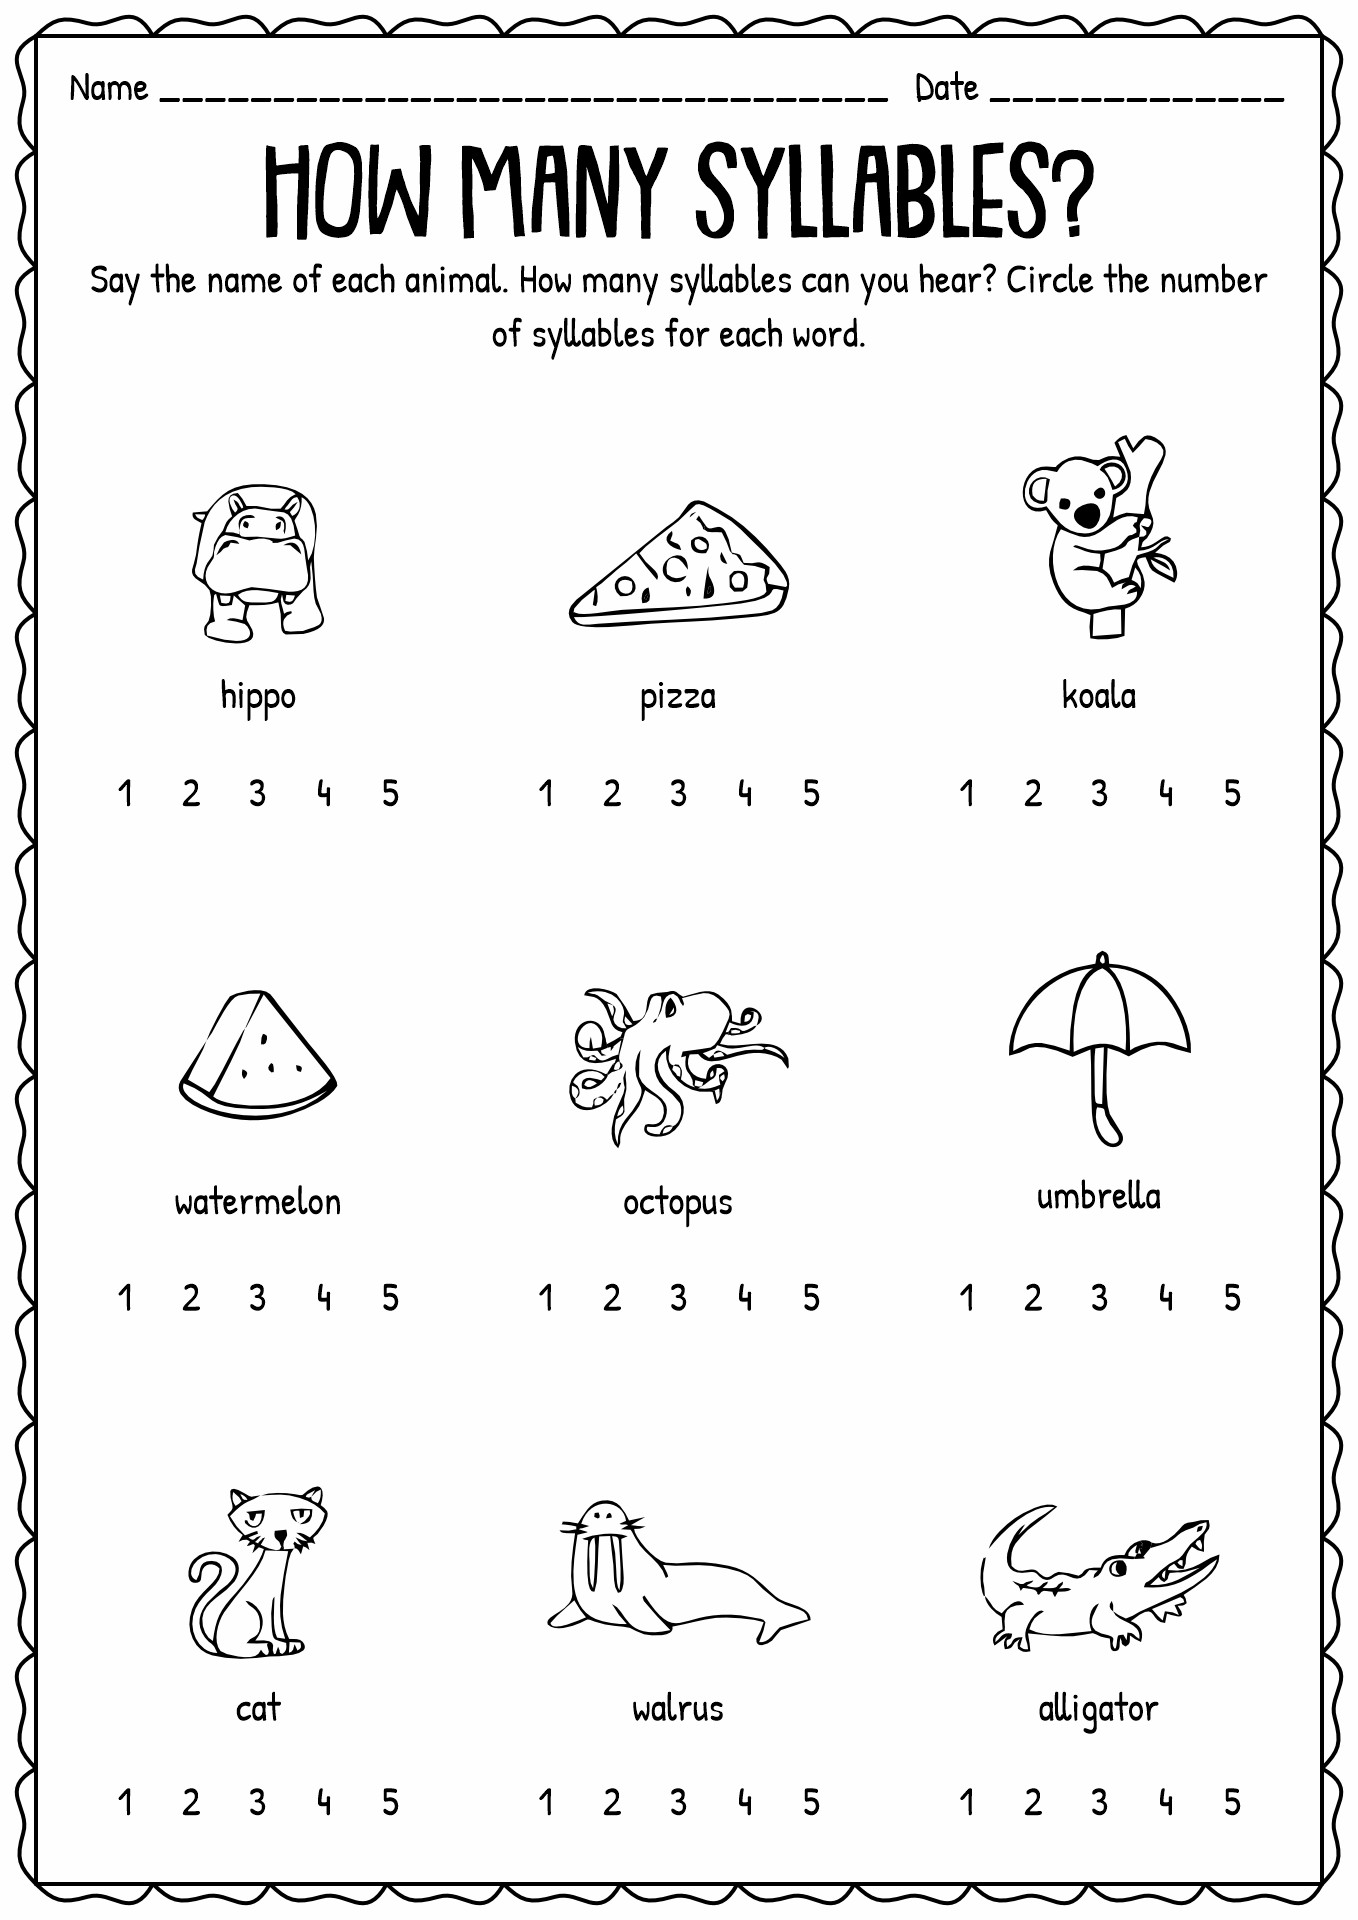 syllables-worksheet-for-kindergarten-kindergarten-syllable-worksheets